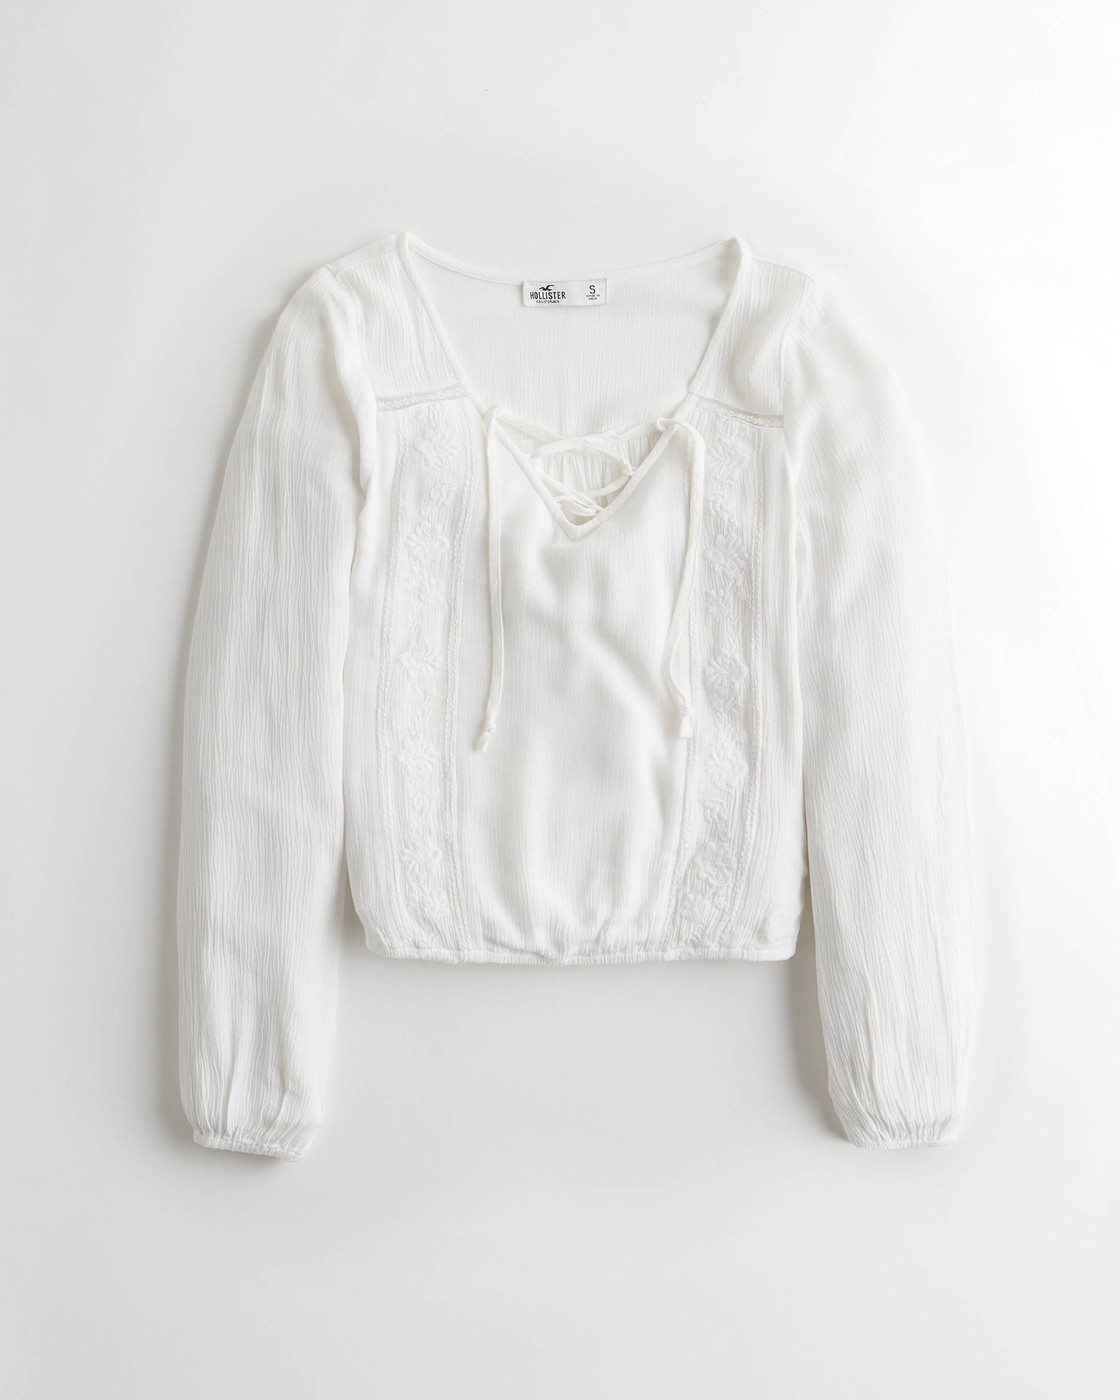 Женская блузка - блуза Hollister, M, M